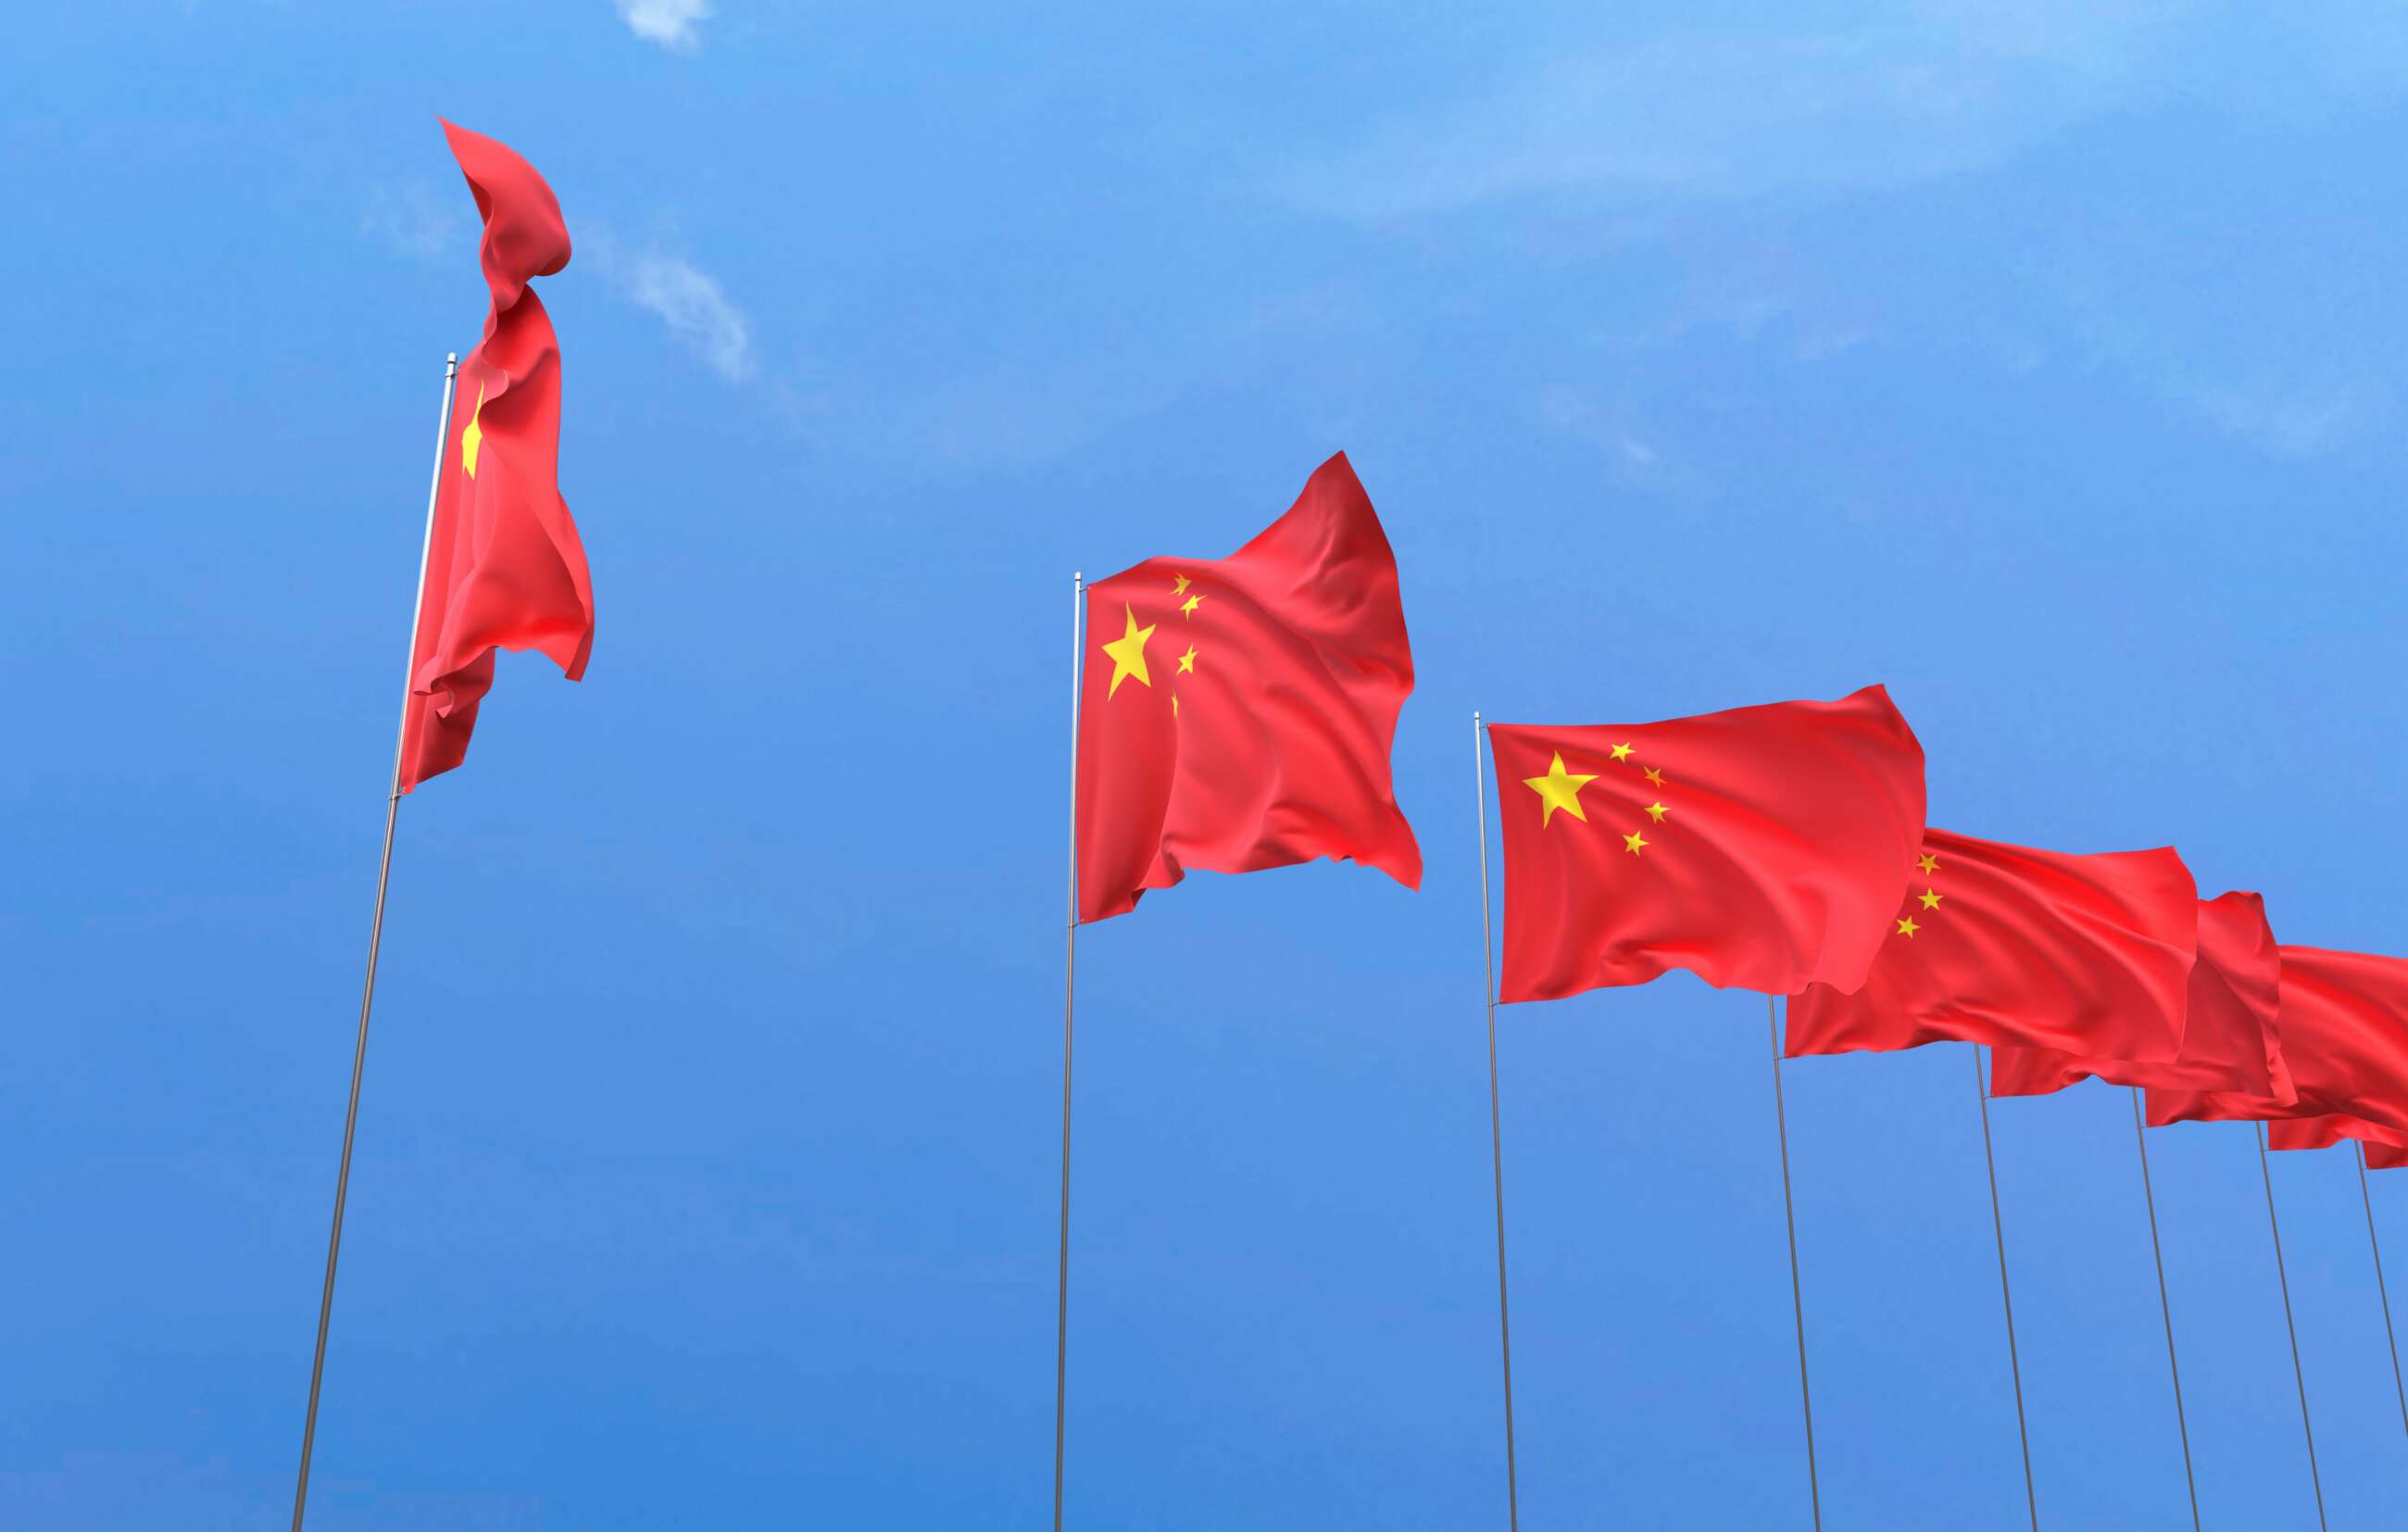 Unas banderas de China ondean en el cielo. Foto: Freepik.